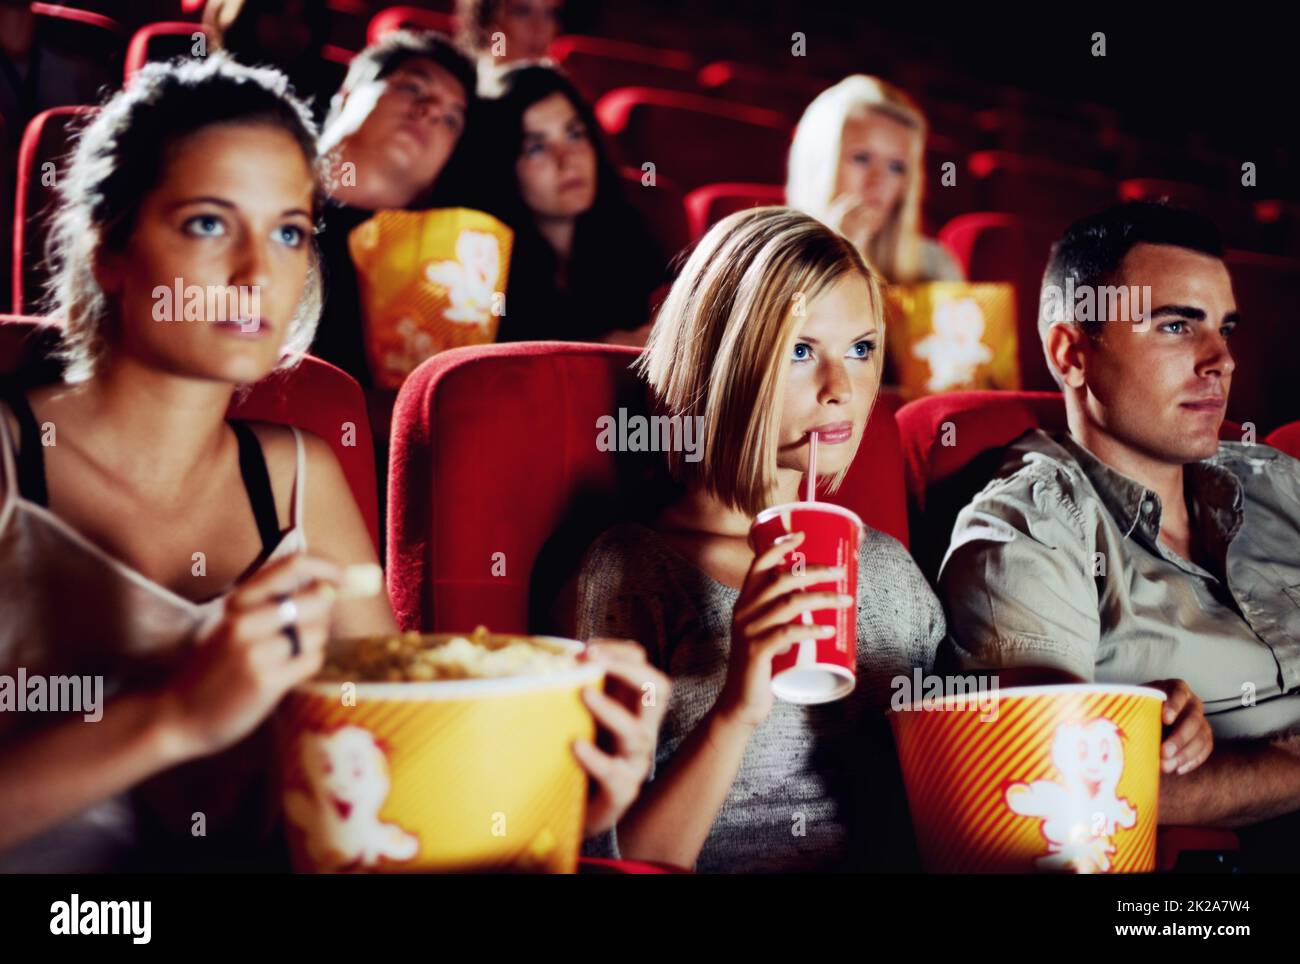 Süße Spannung. Freunde sitzen mit Erfrischungen und Popcorn und genießen gemeinsam einen Film. Stockfoto